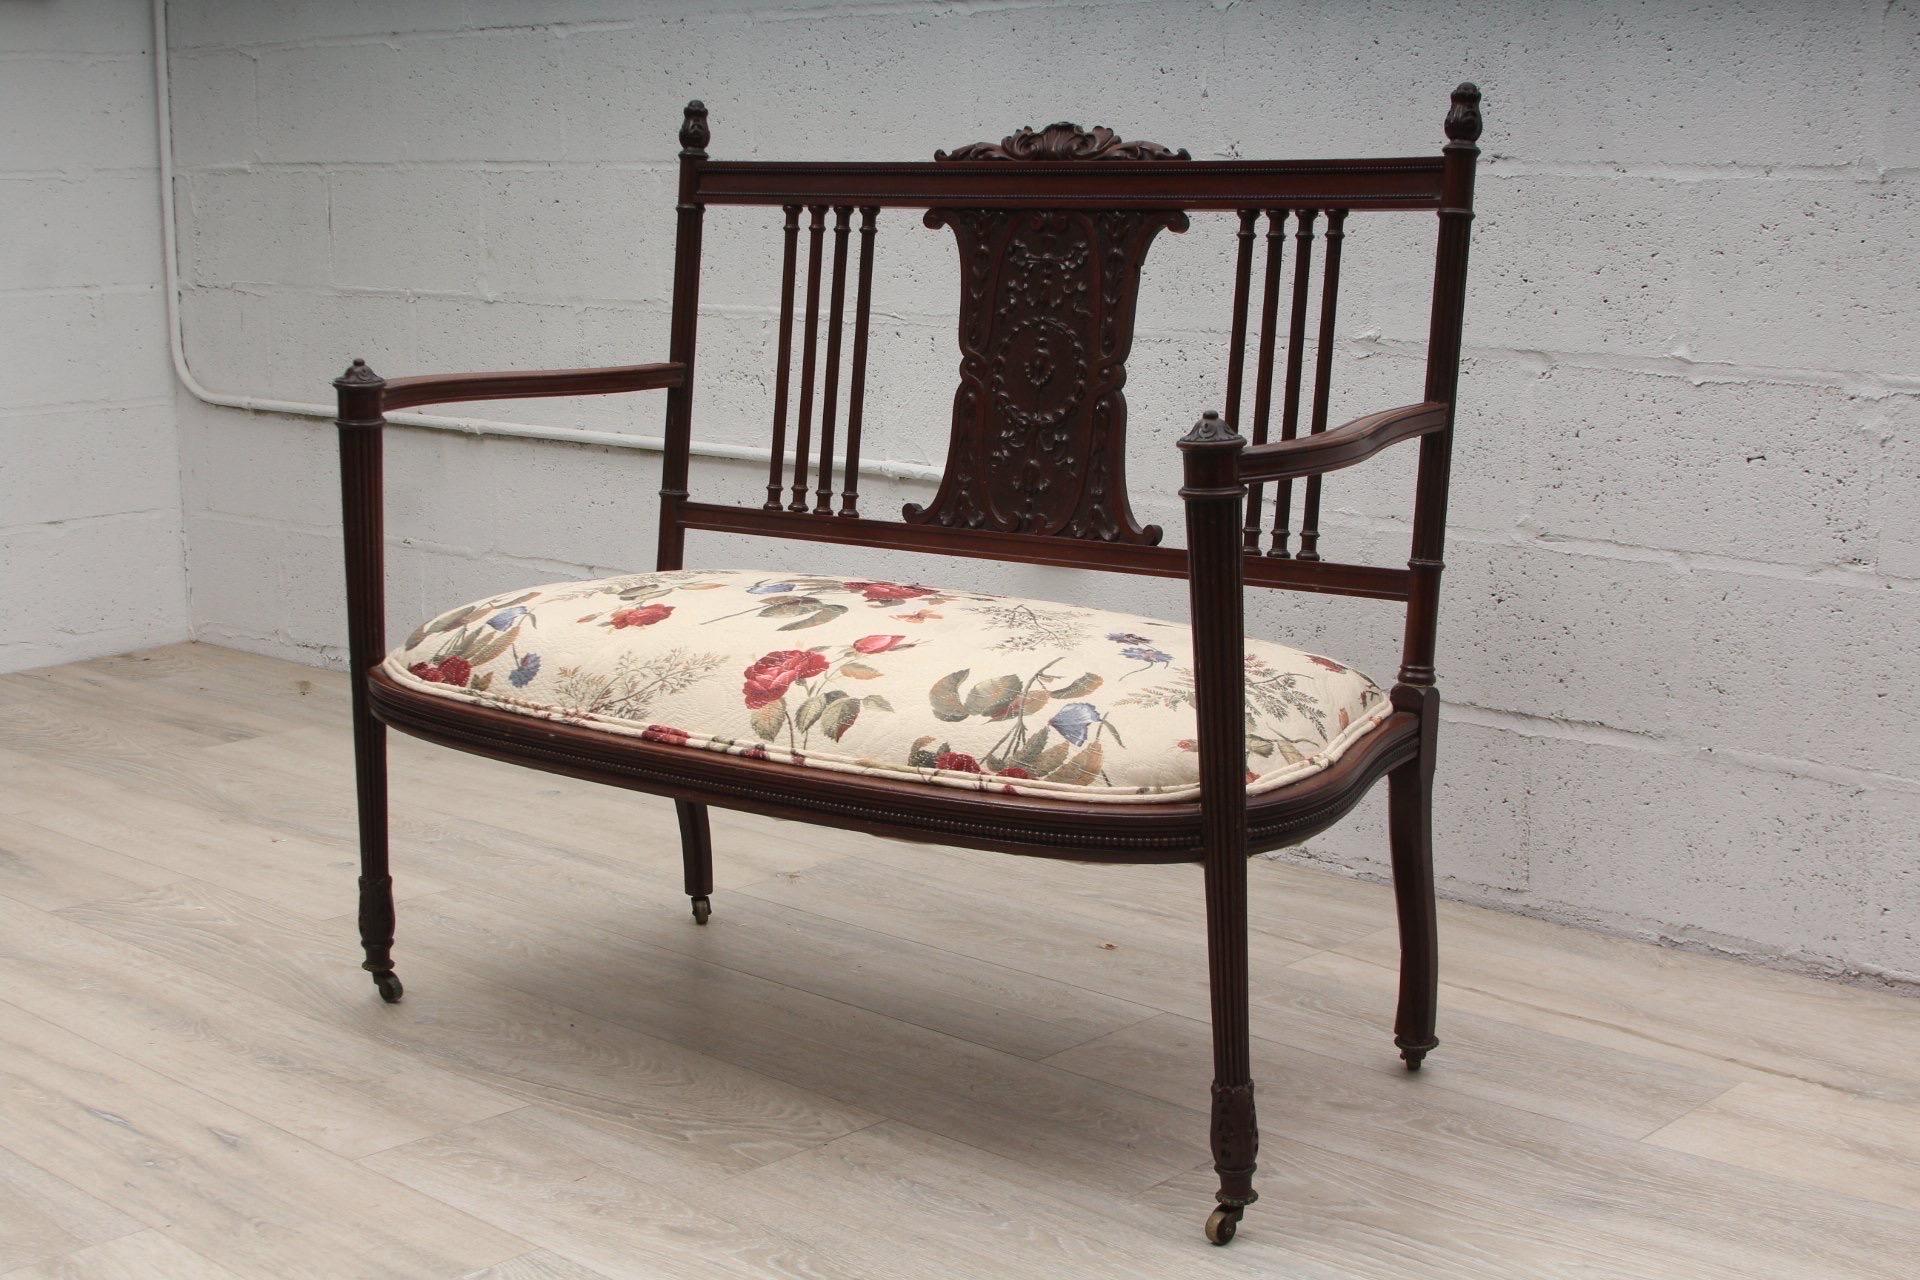 Canapé ancien en bois fruitier sculpté avec assise tapissée.

Français, vers 1910, avec une tapisserie plus tardive.

Dimensions : 42.5 